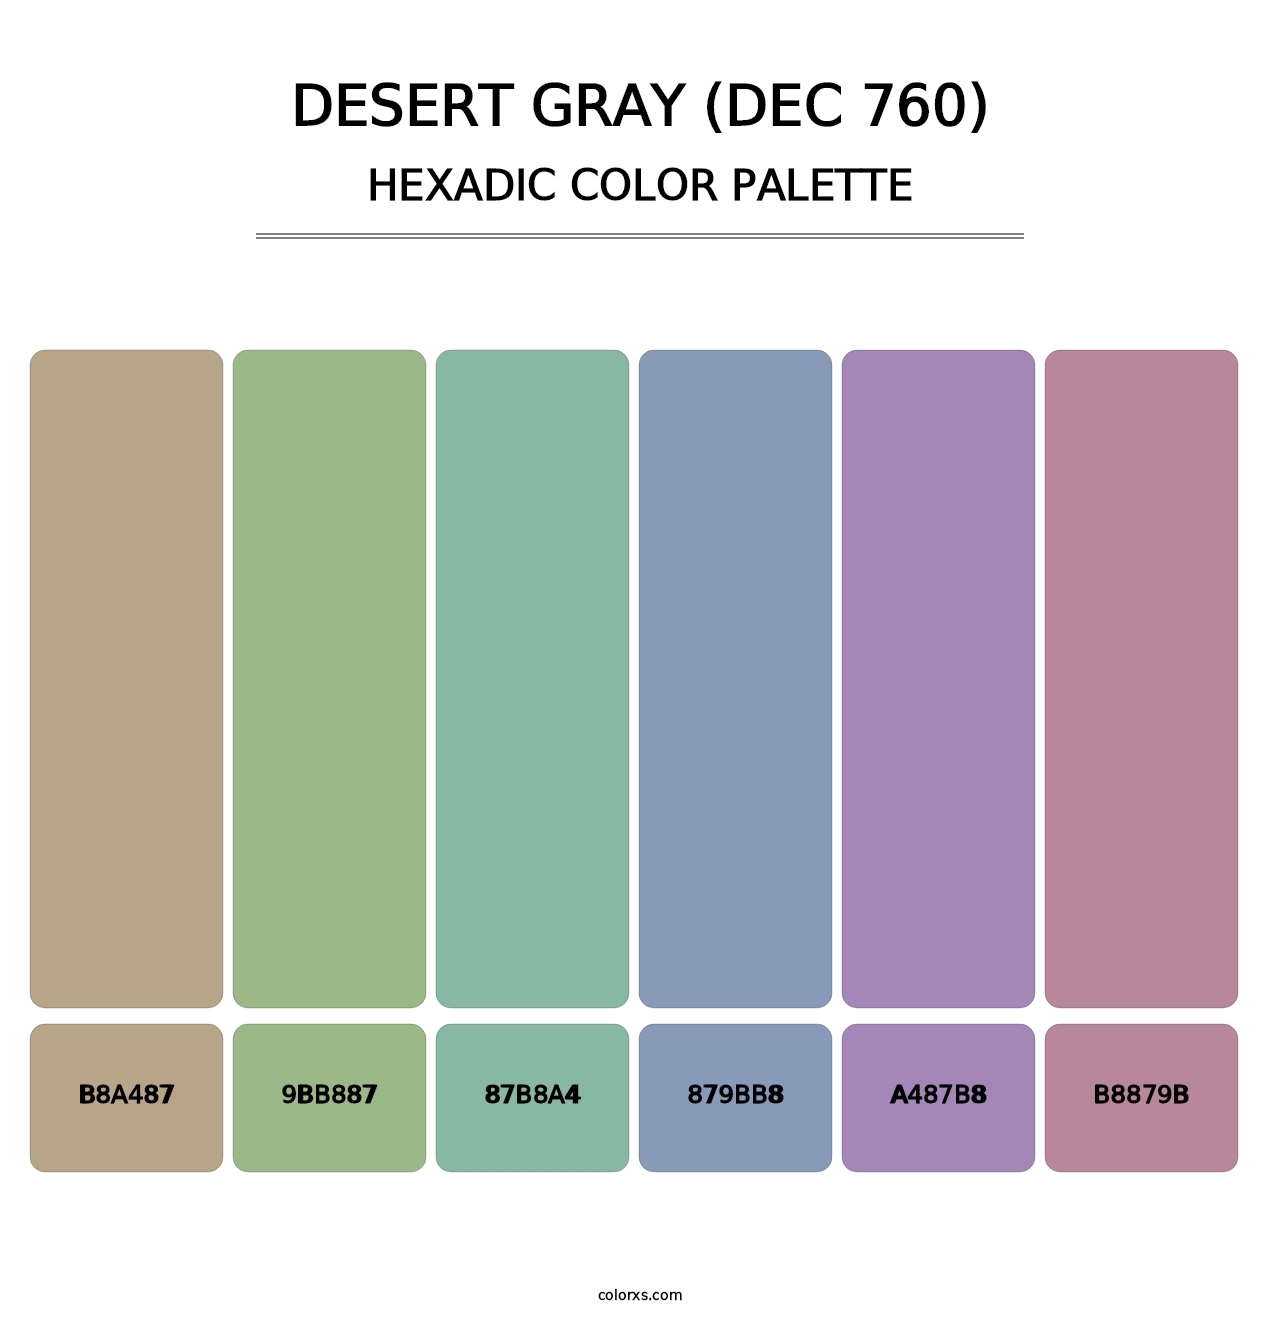 Desert Gray (DEC 760) - Hexadic Color Palette